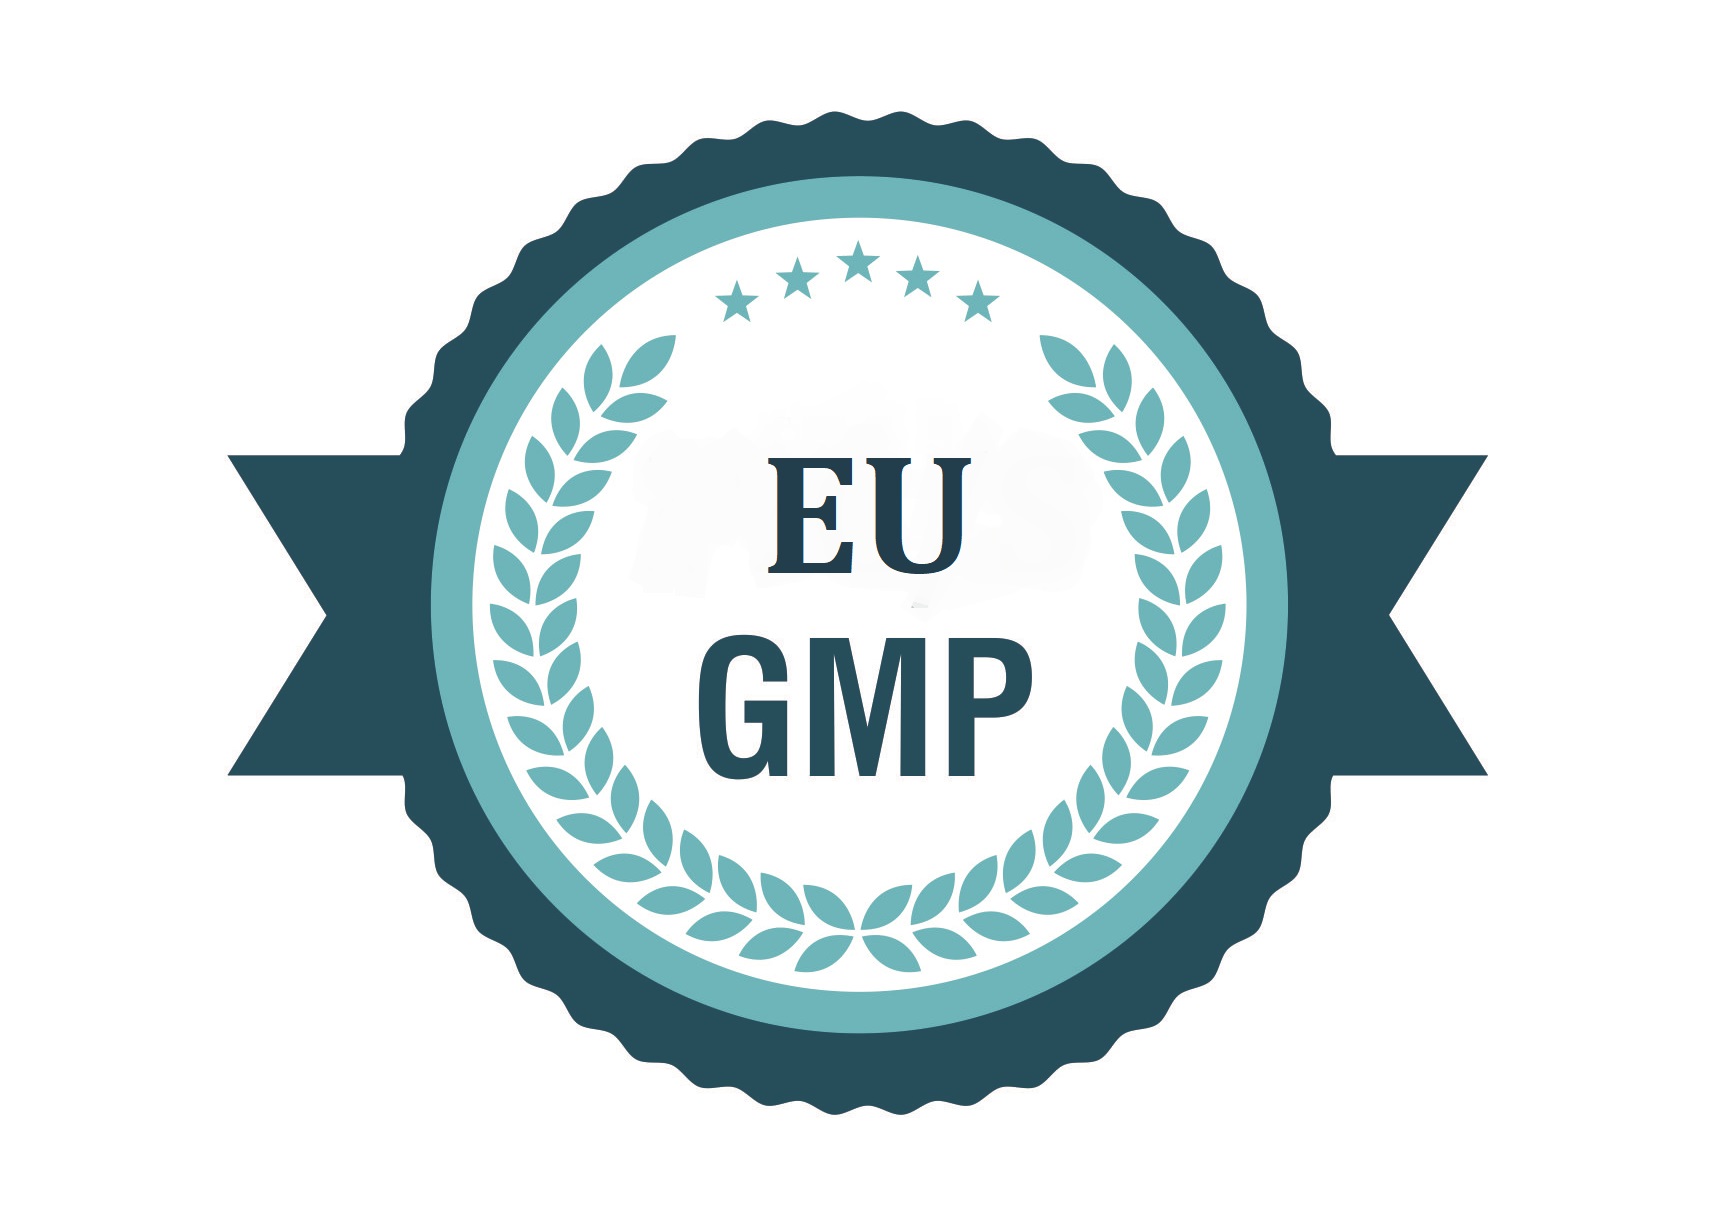 EU GMP annex 15: Chất lượng và chứng nhận